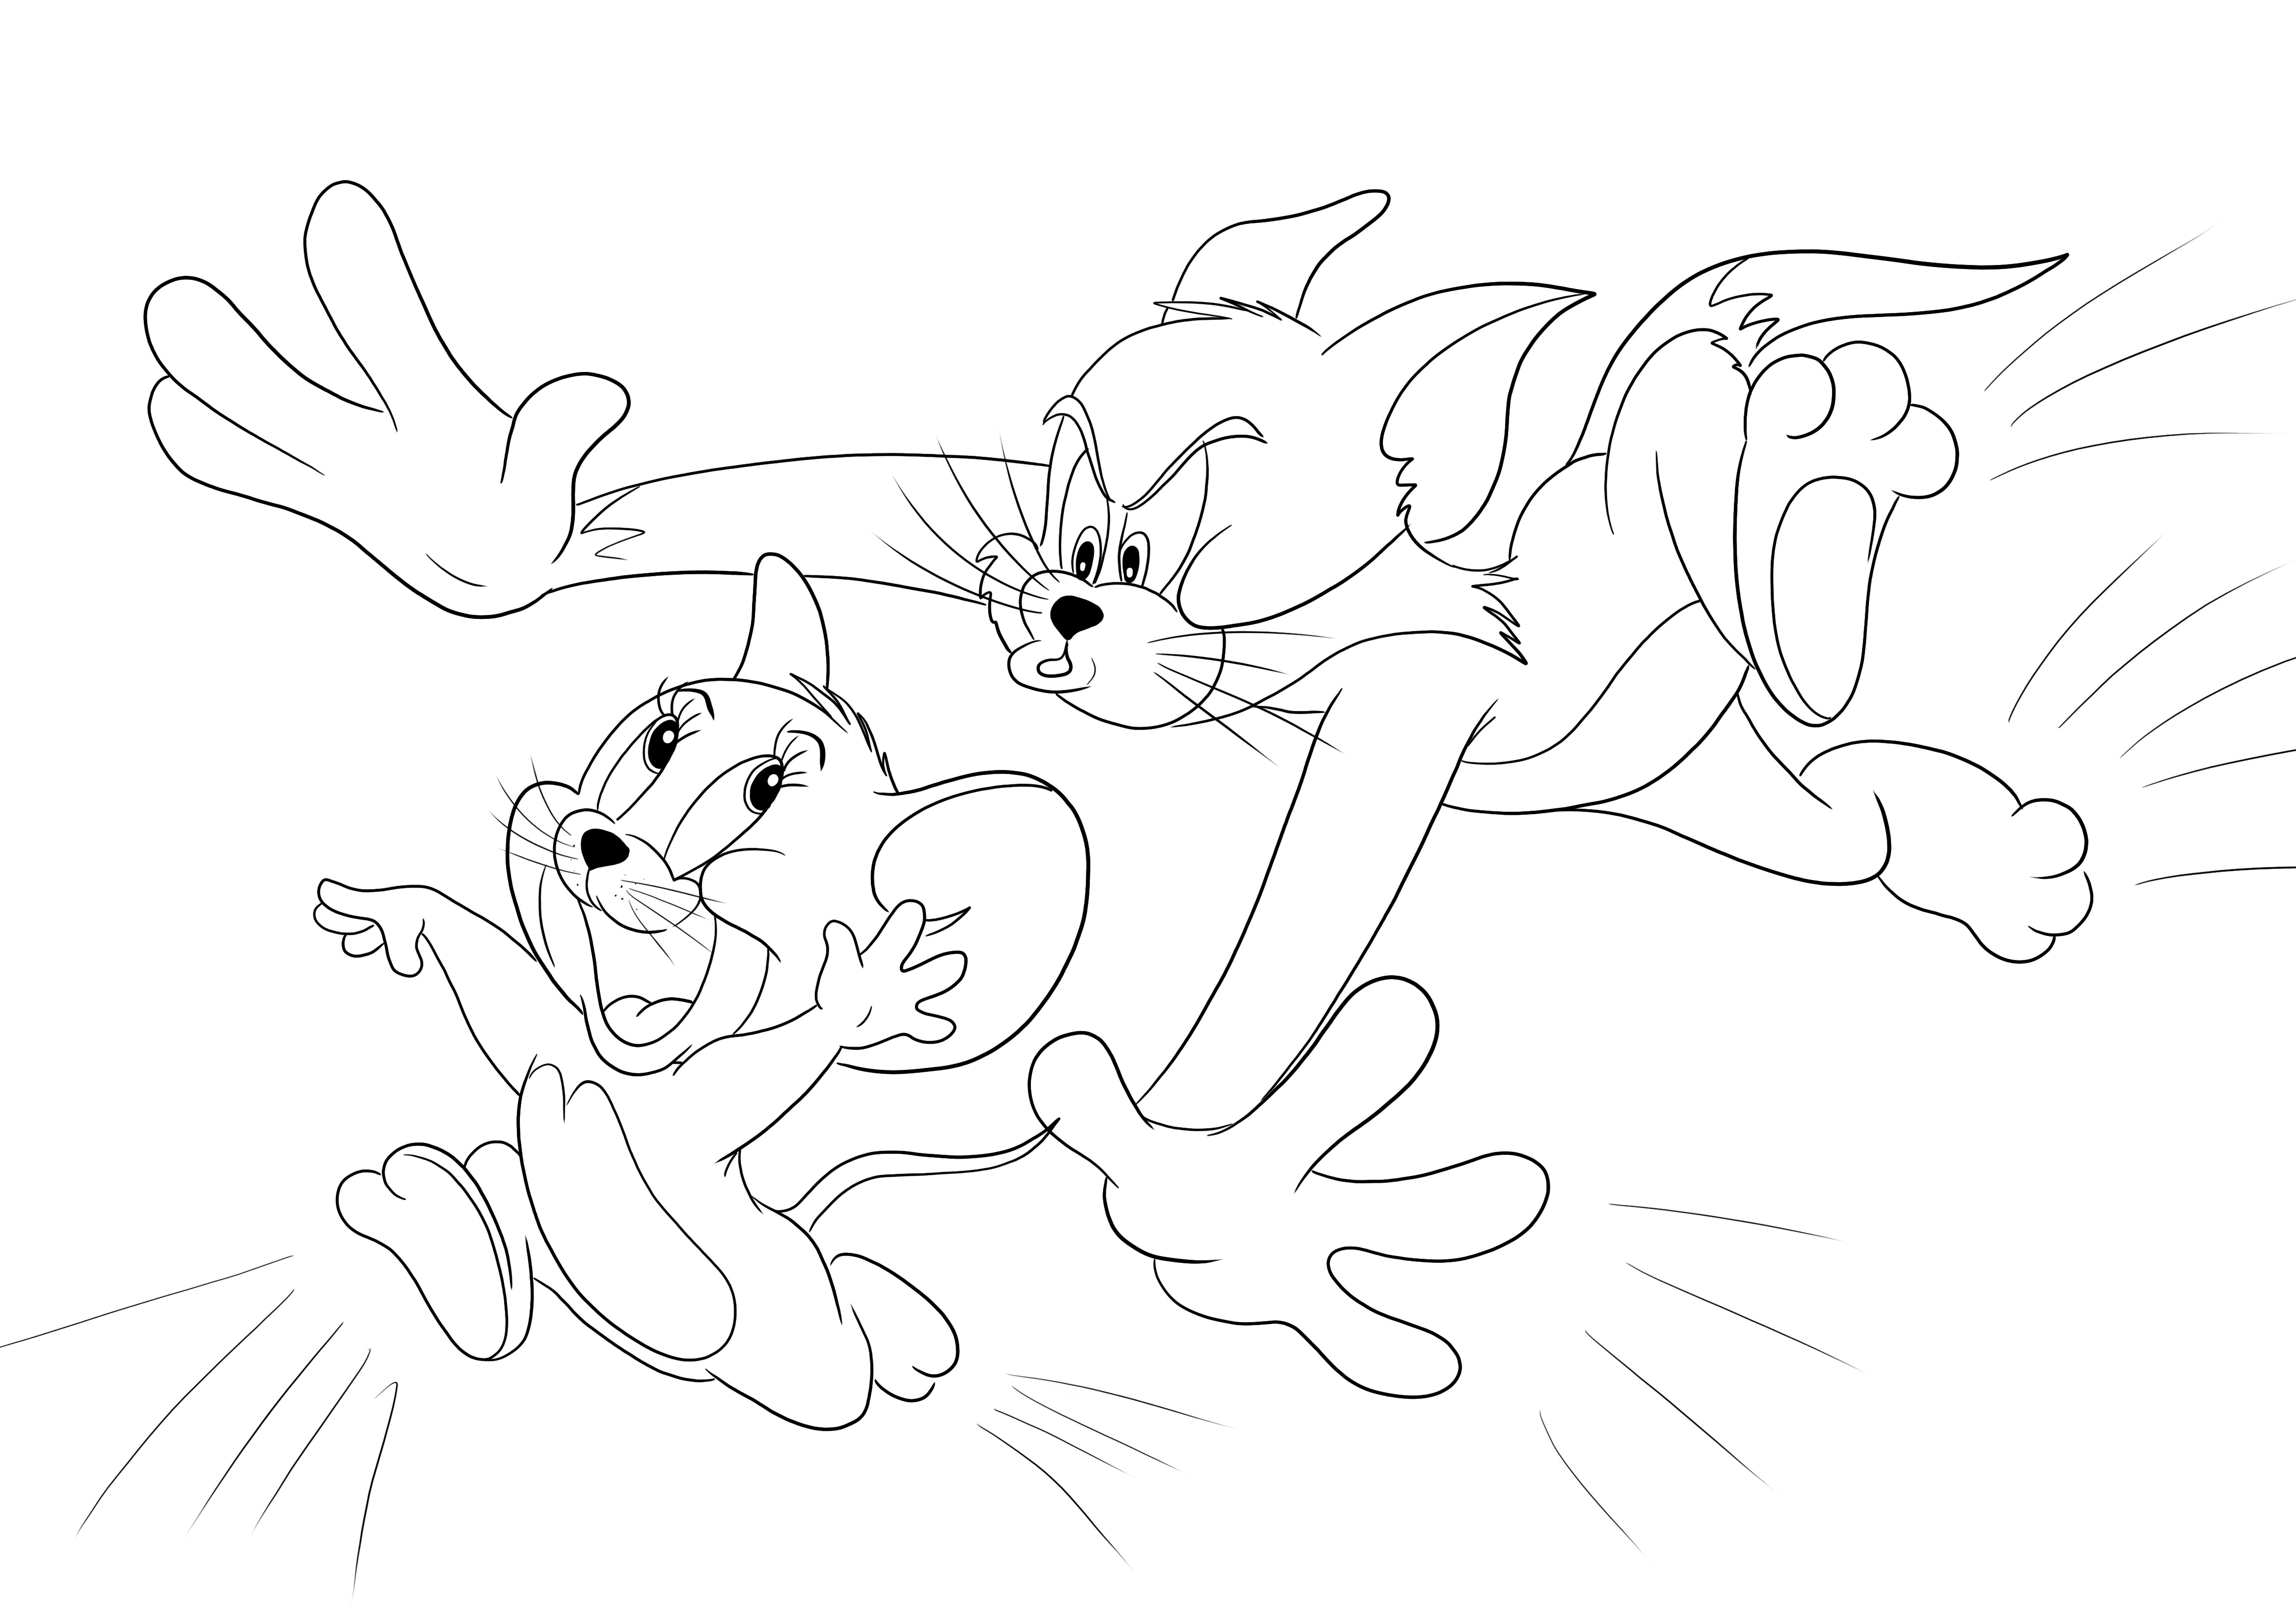 Tom jagt Jerry zum Ausmalen zum Spaß und zum kostenlosen Ausdrucken oder Herunterladen